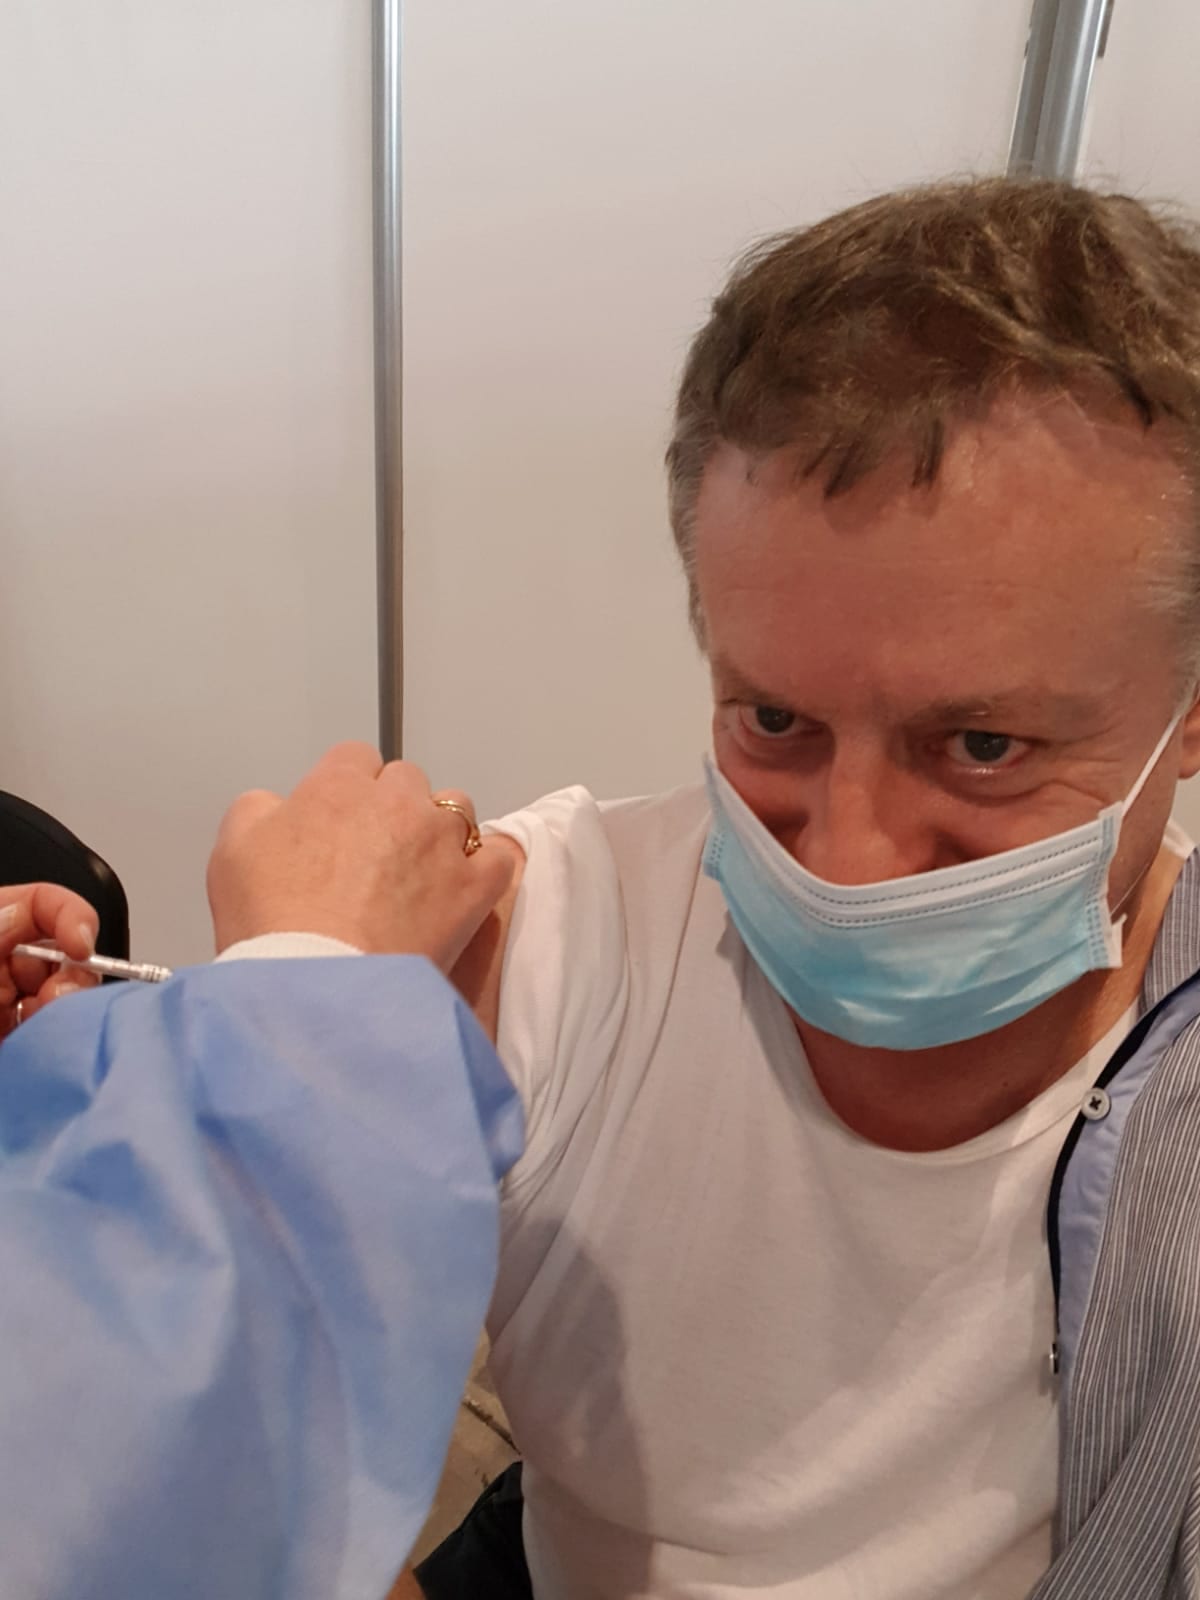 Nel giorno delle 7 milioni di somministrazioni in Lombardia, anche il turno di Paleardi: “Vaccinatevi!”